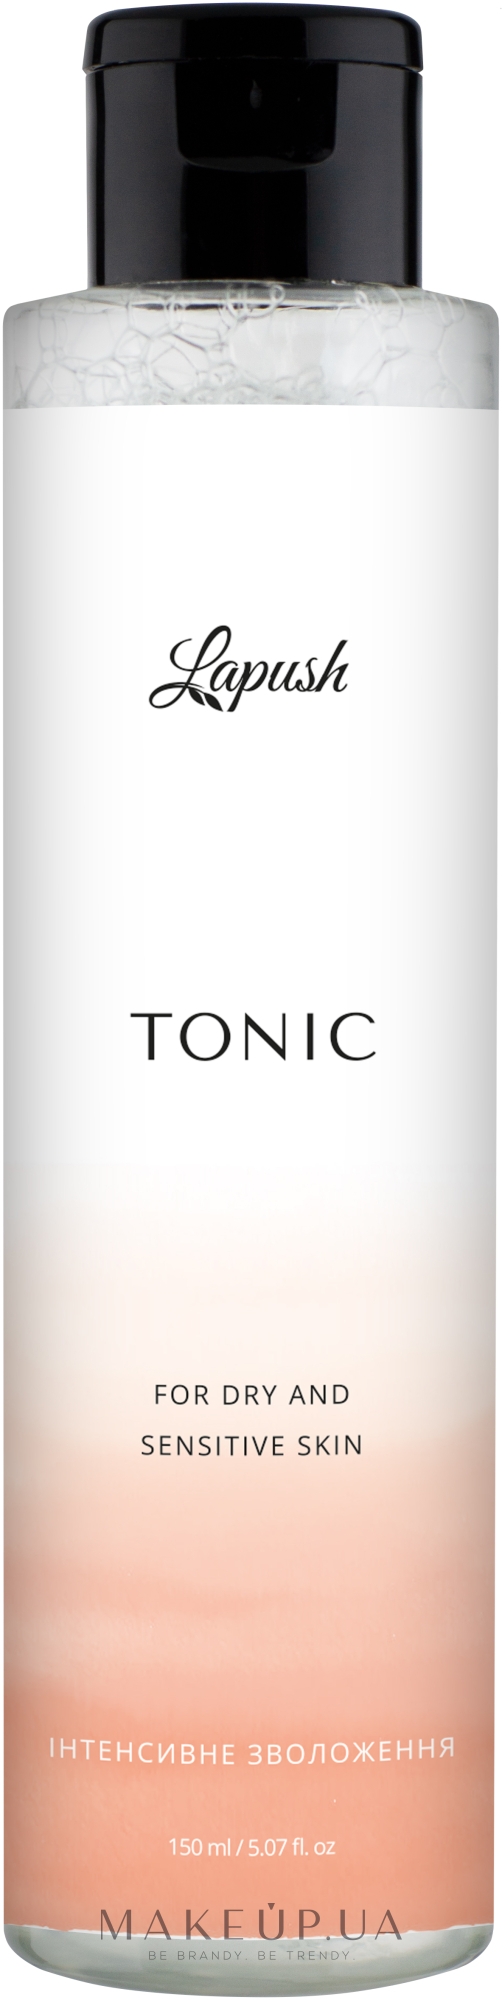 Тоник "Интенсивное увлажнение" для сухой и чувствительной кожи - Lapush Tonic For Dry And Sensitive Skin — фото 150ml